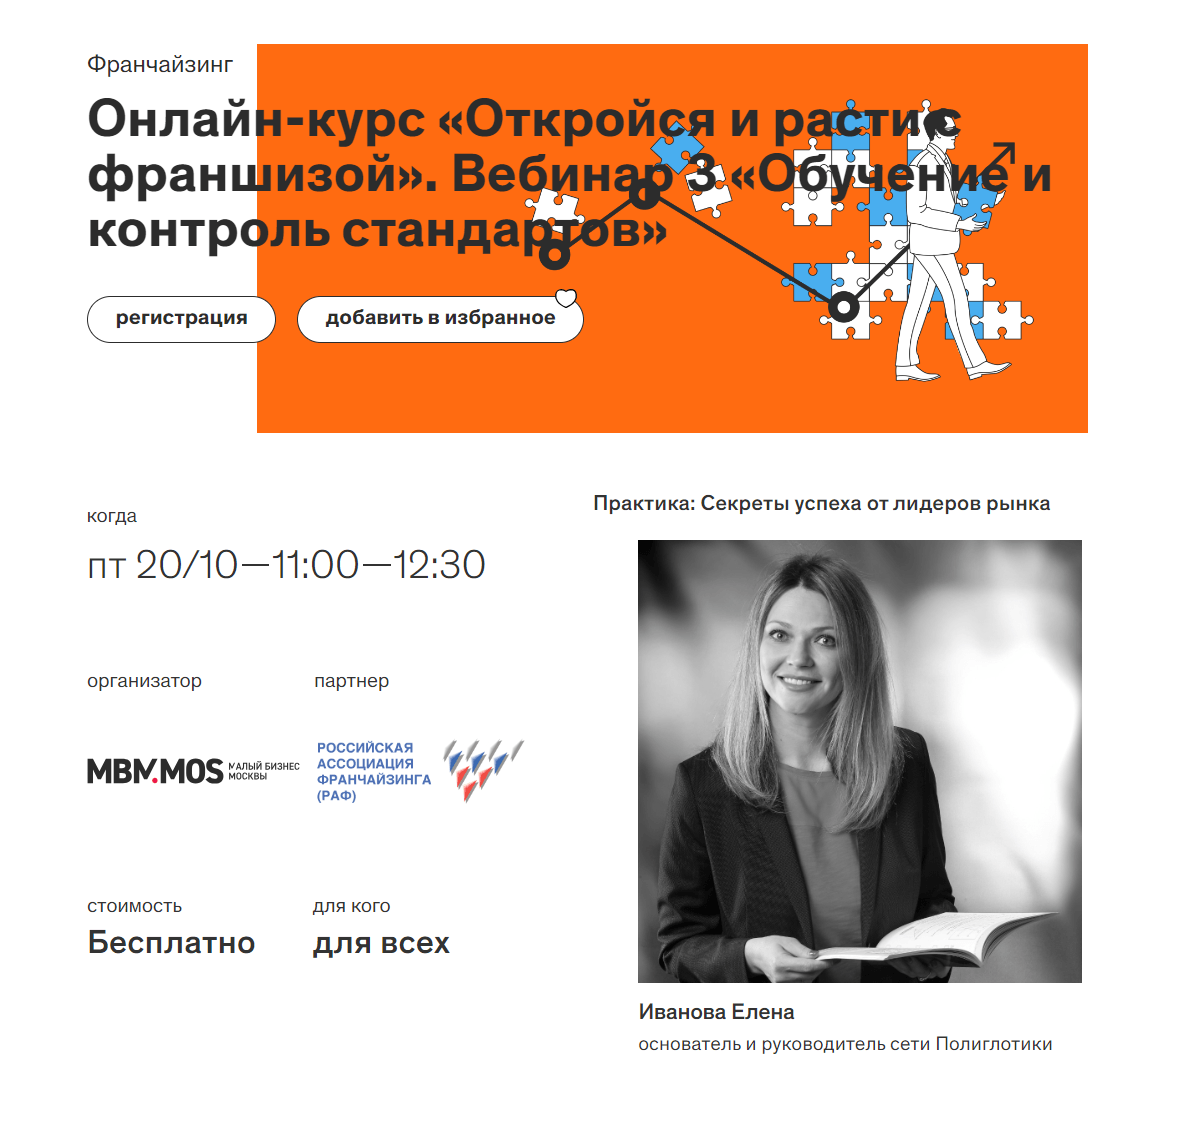 20 октября в 11:00 ч. основатель Полиглотиков выступит на вебинаре онлайн-курса «Откройся и расти с франшизой»